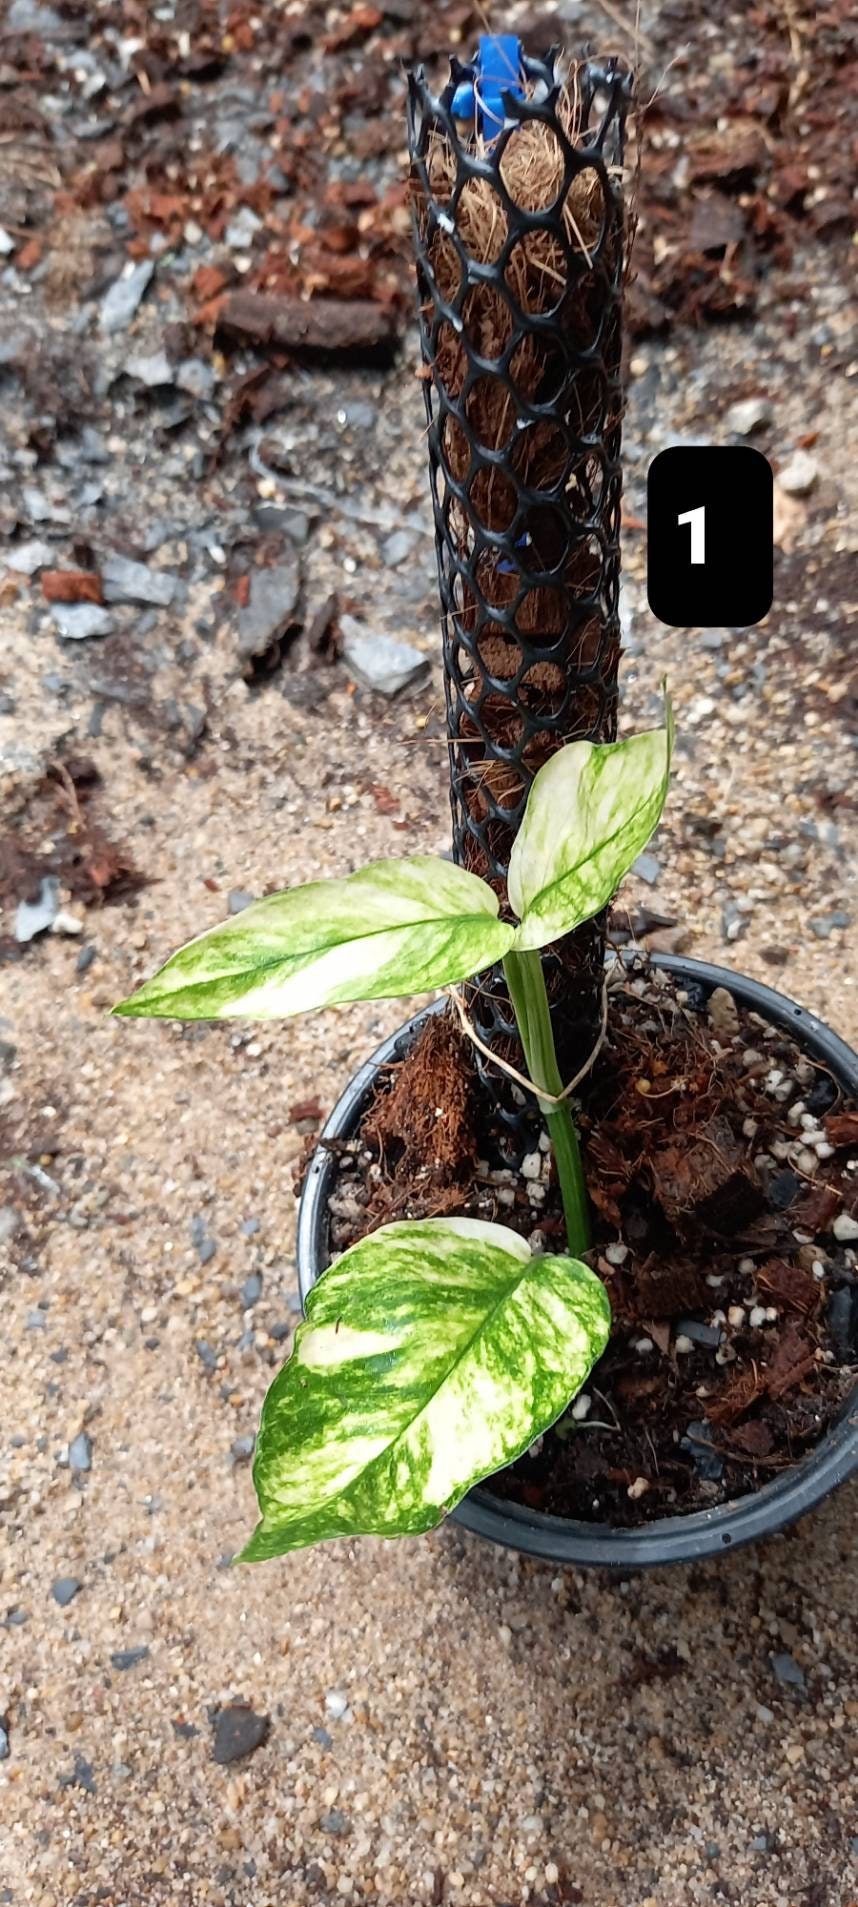 Epipremnum pinnatum yellow flame no. 1